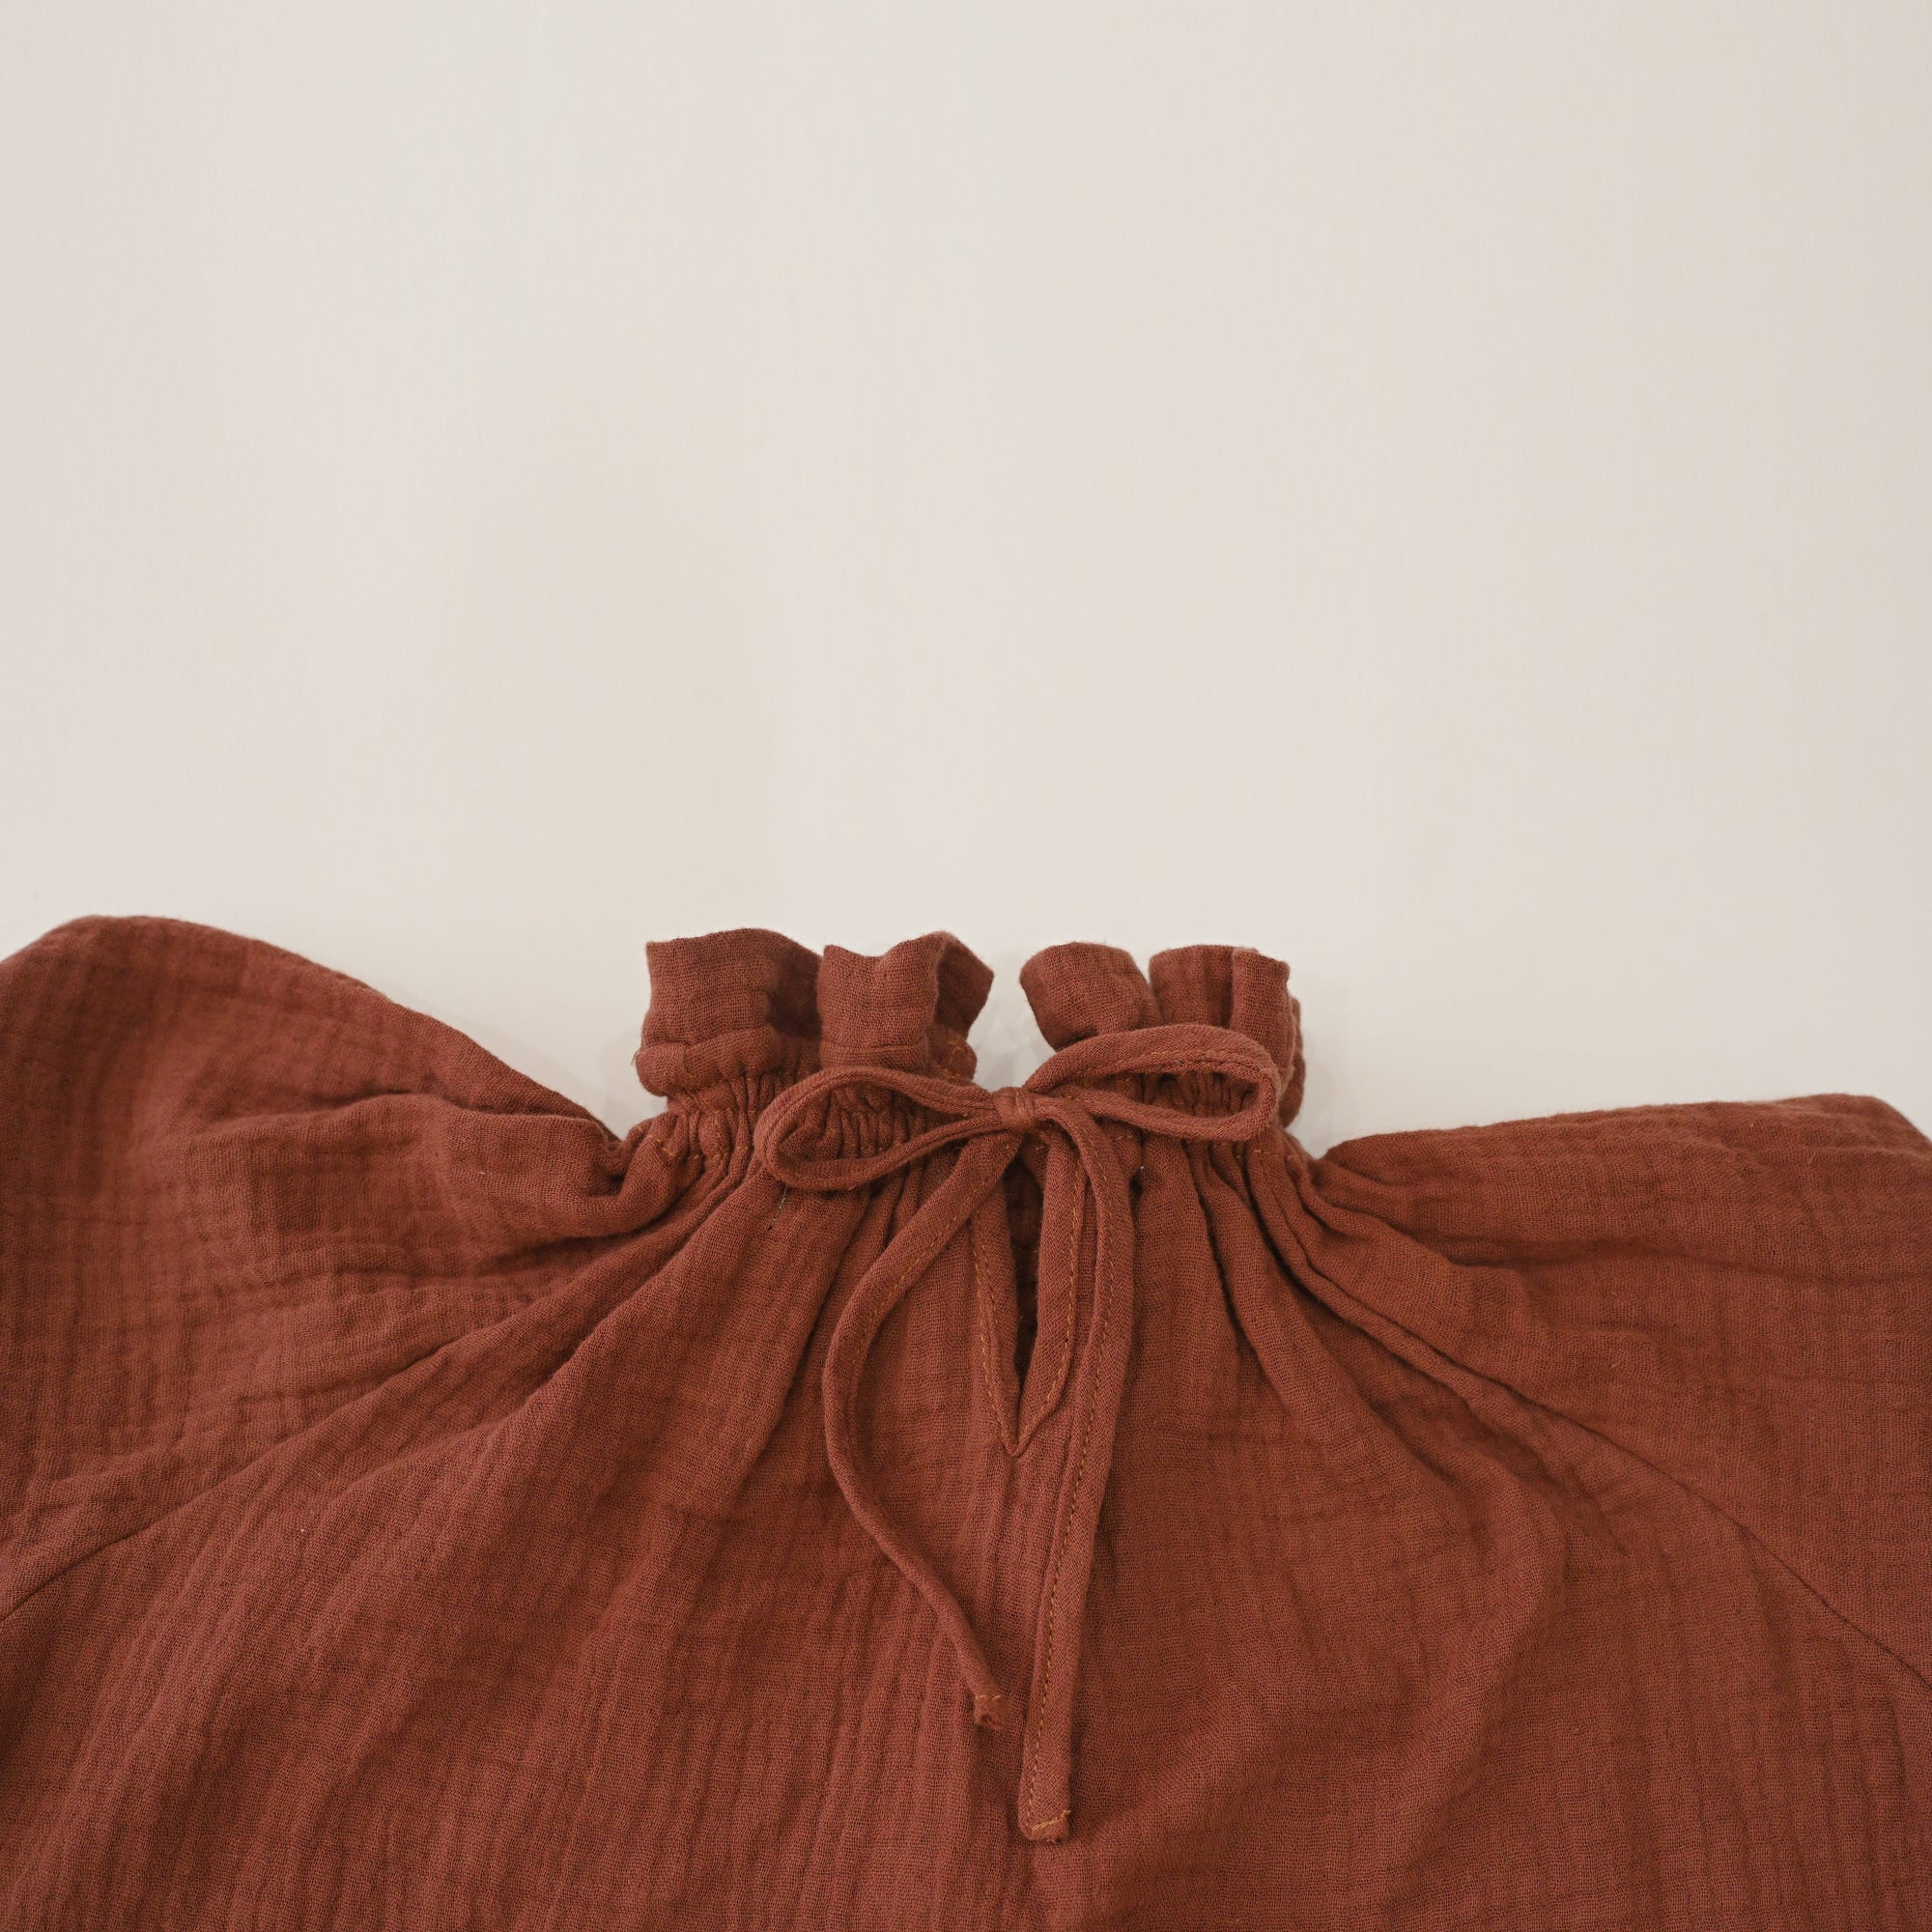 blouse E1 brown